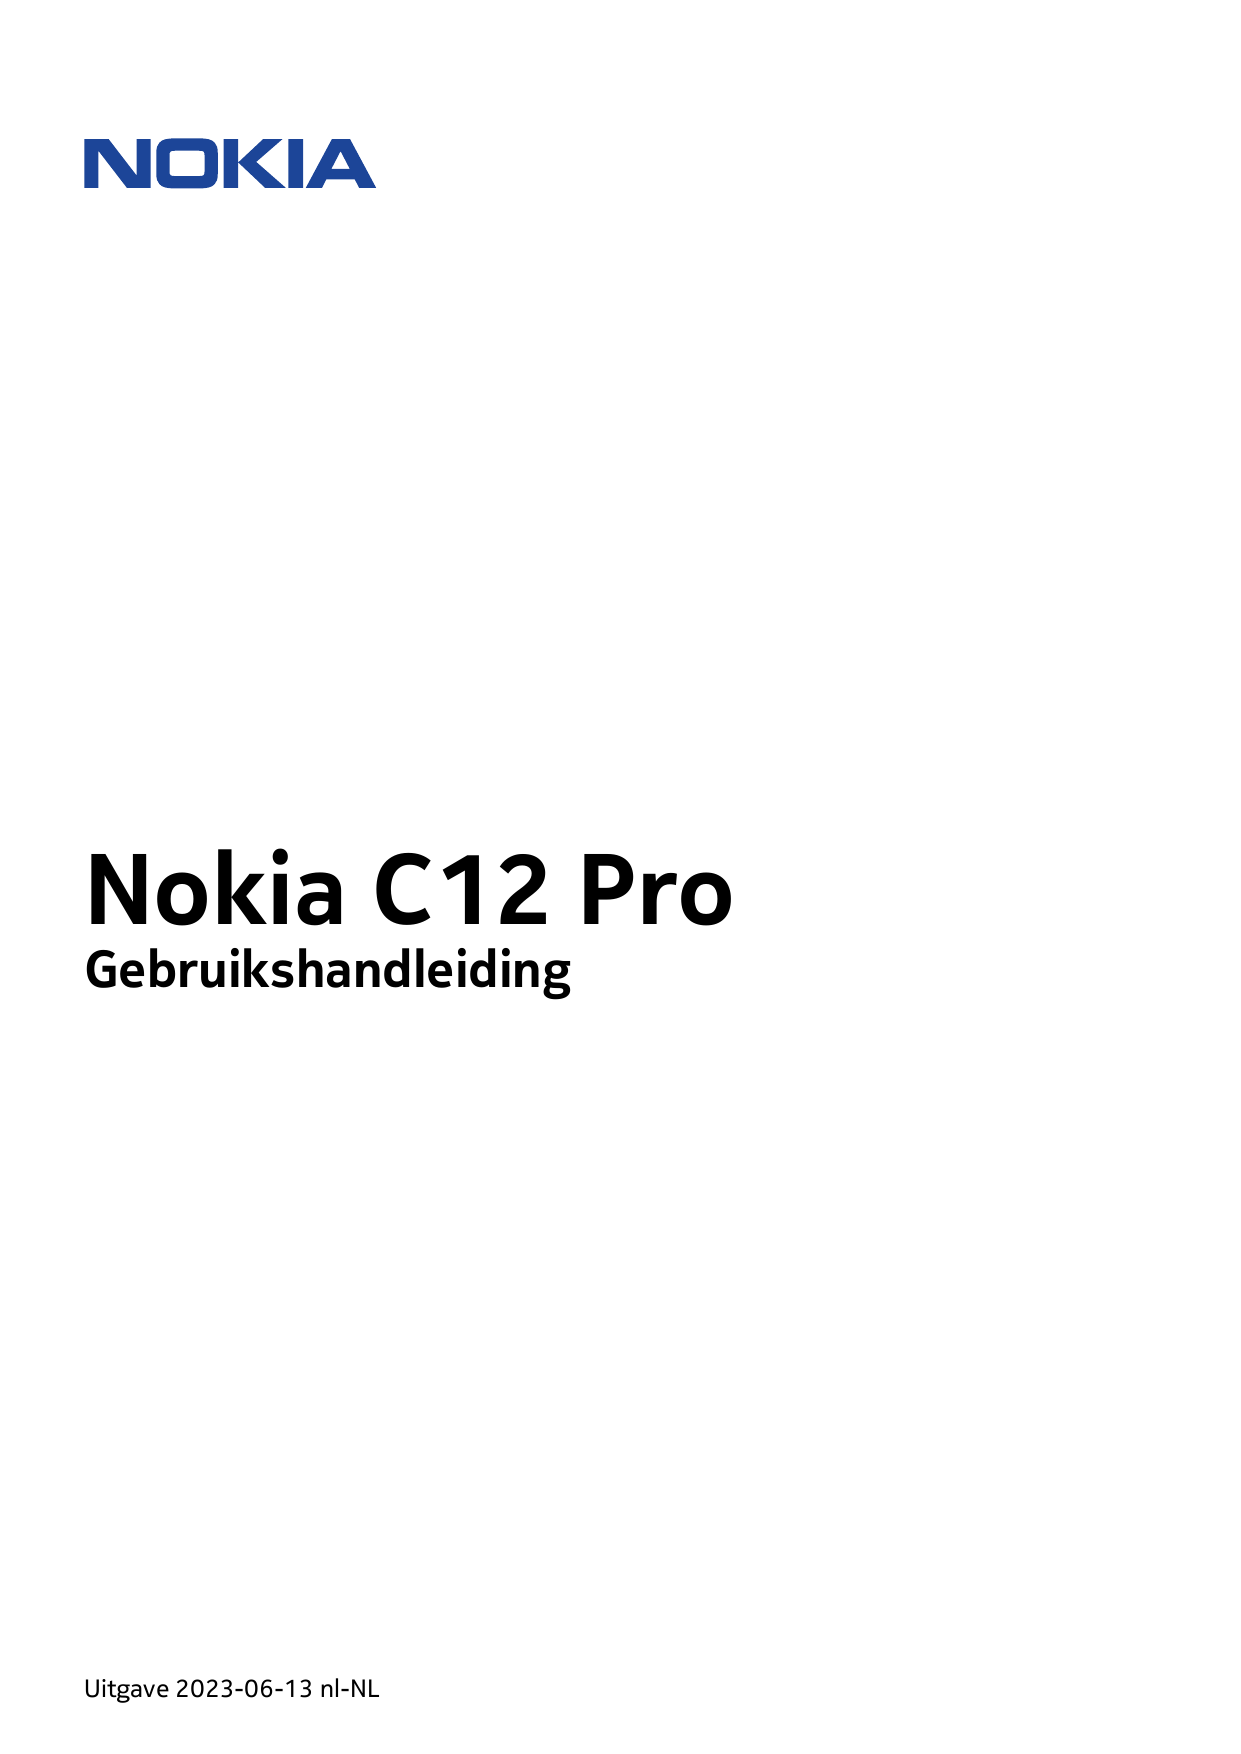 Nokia C12 ProGebruikshandleidingUitgave 2023-06-13 nl-NL